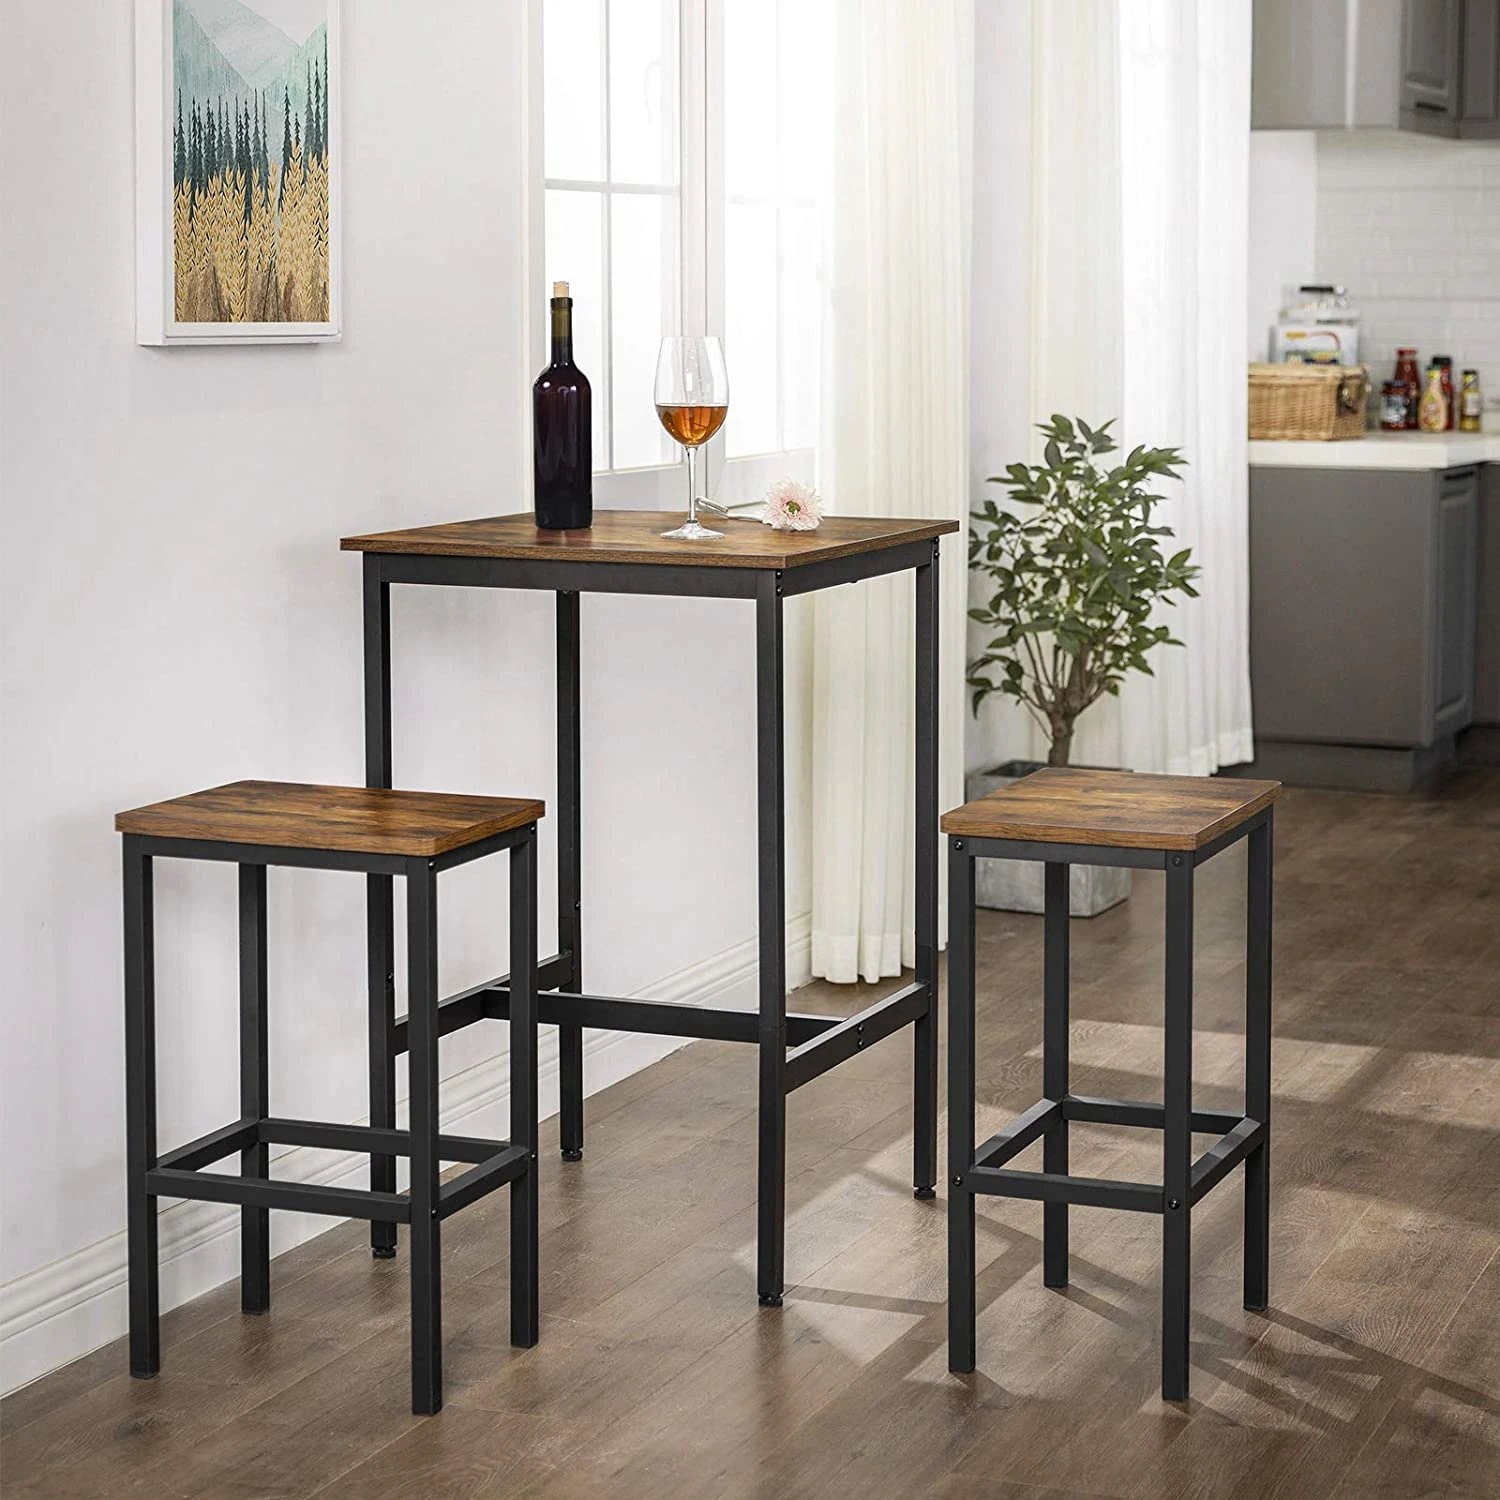 keukentafel, lessenaar met stabiel frame, eenvoudige montage, keuken, industriële stijl, vintage bruin-zwart -